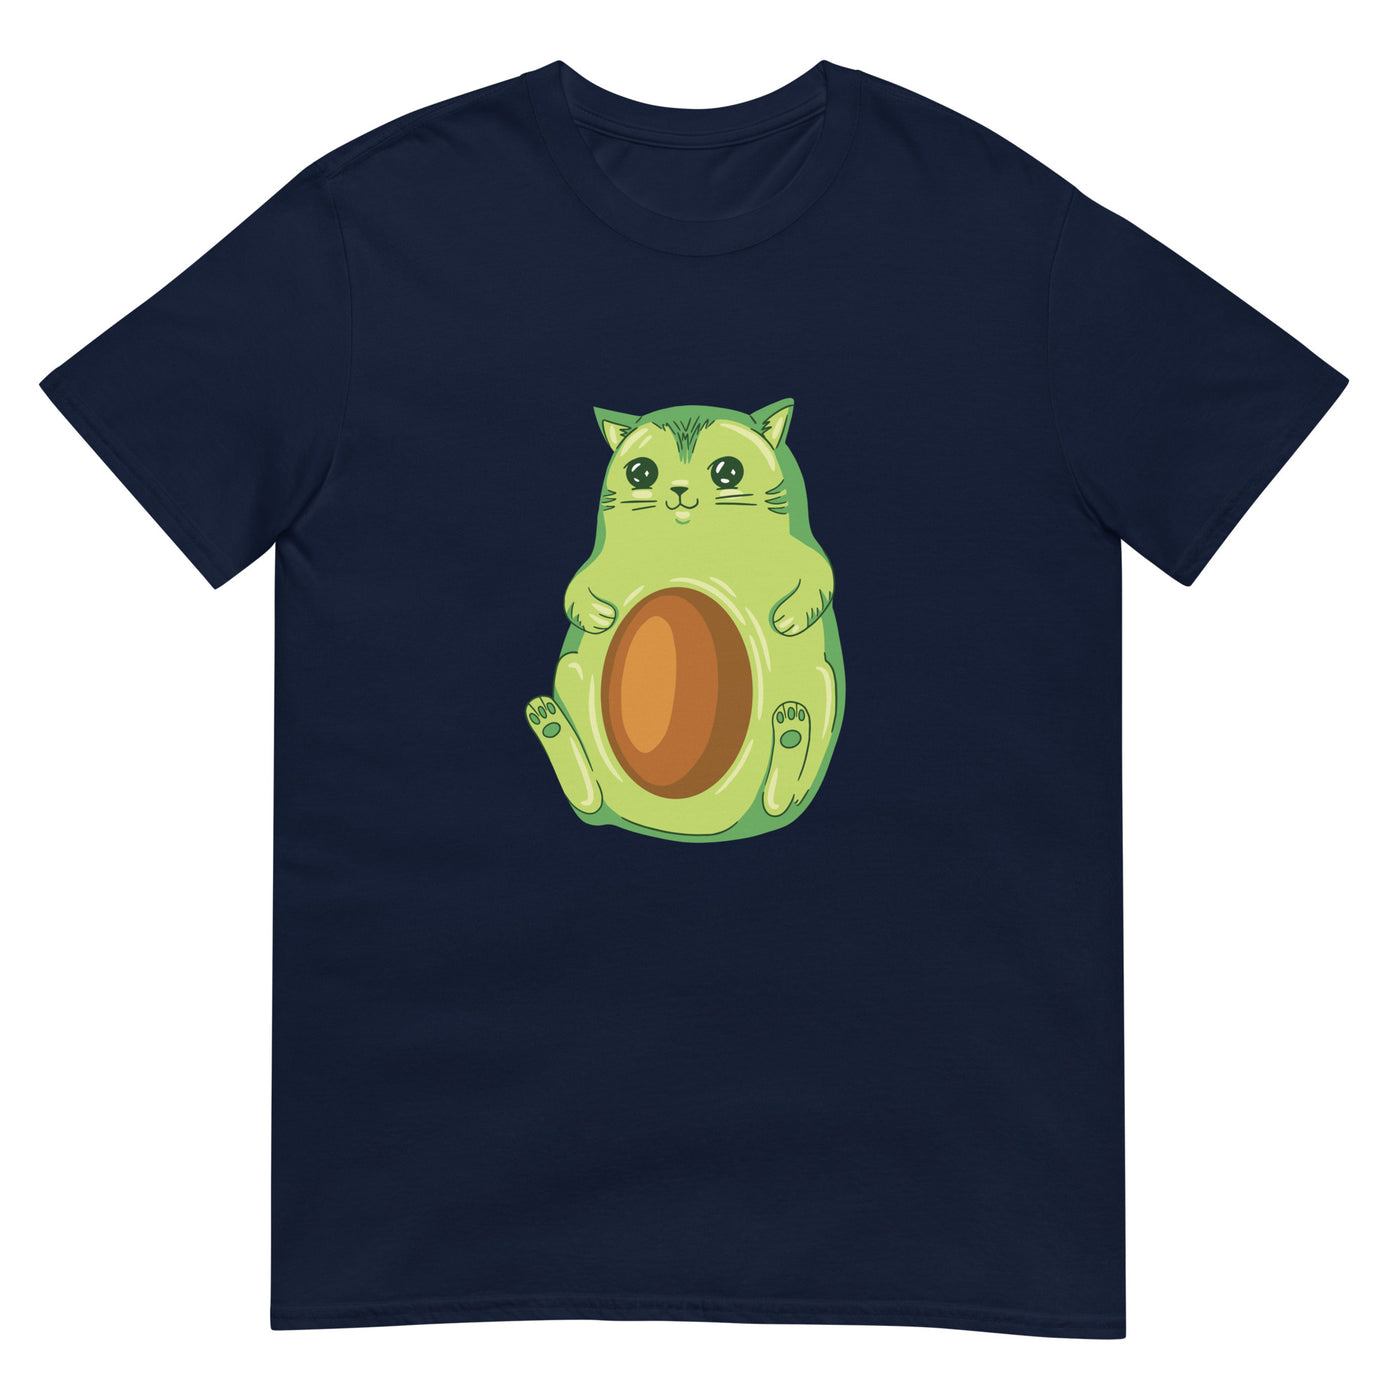 Avocado-förmige Cartoon-Katze - Herren T-Shirt Other_Niches xxx yyy zzz Navy